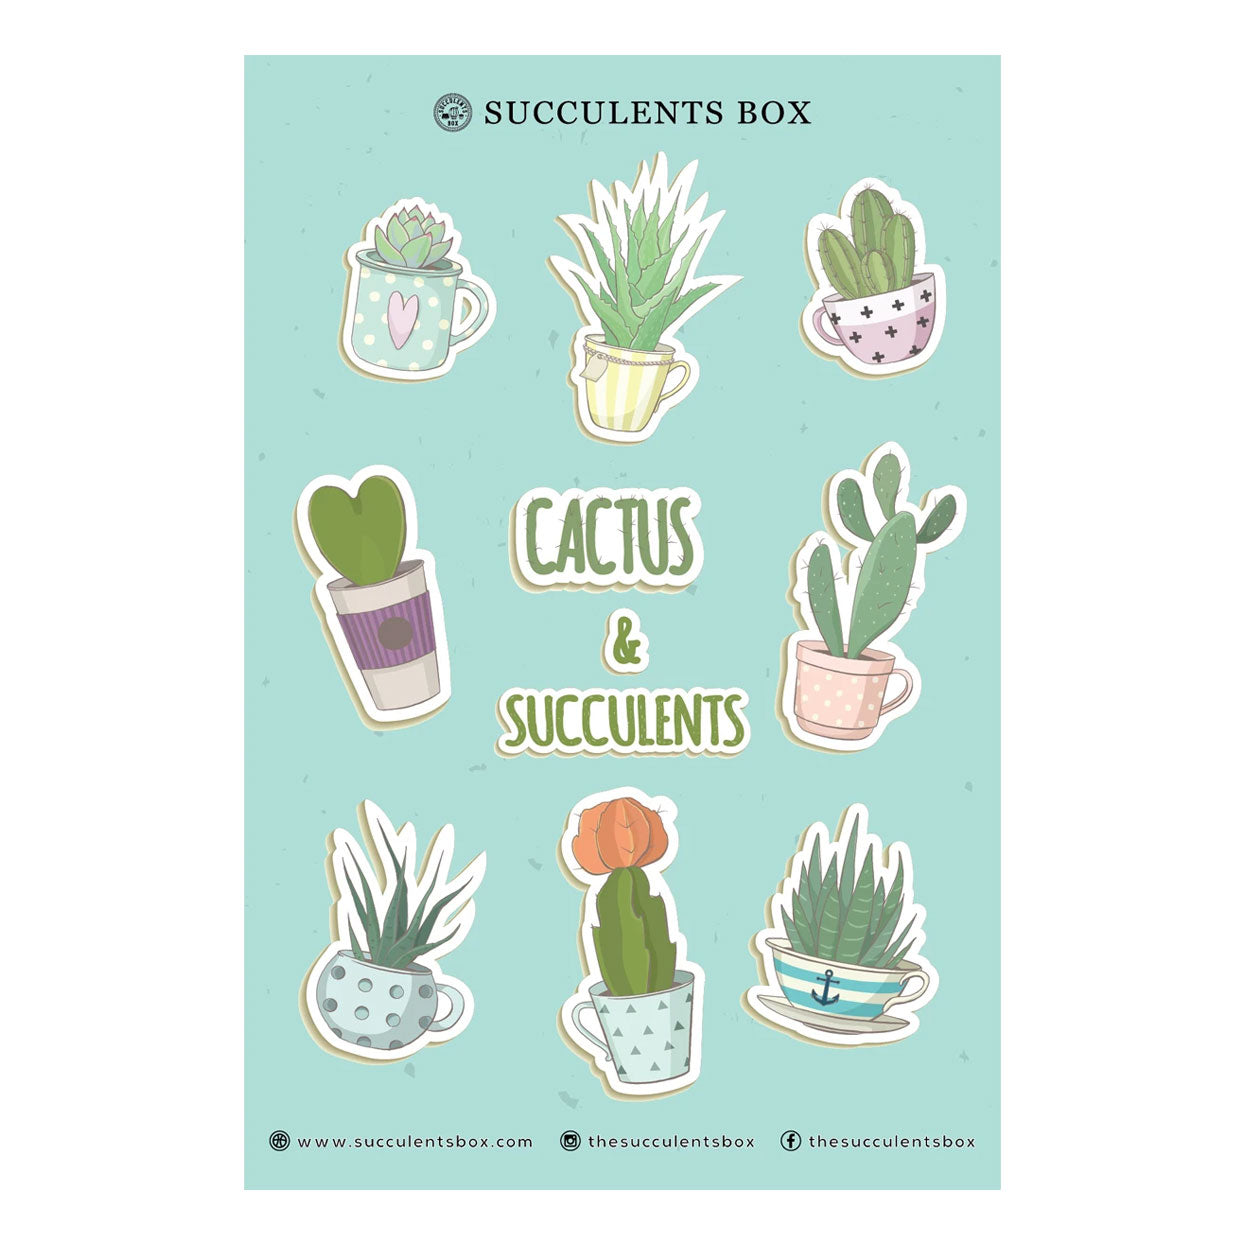 Cactus & Succulents Sticker for sale, Cute Potted Succulent Sticker, Happy Succulent Planner Sticker, Laptop Sticker for sale, Water Bottle Sticker for sale, cactus, cactus succulent, succulent cactus, cacti, cactus and succulents, succulents box, succulent shop, buy succulents online